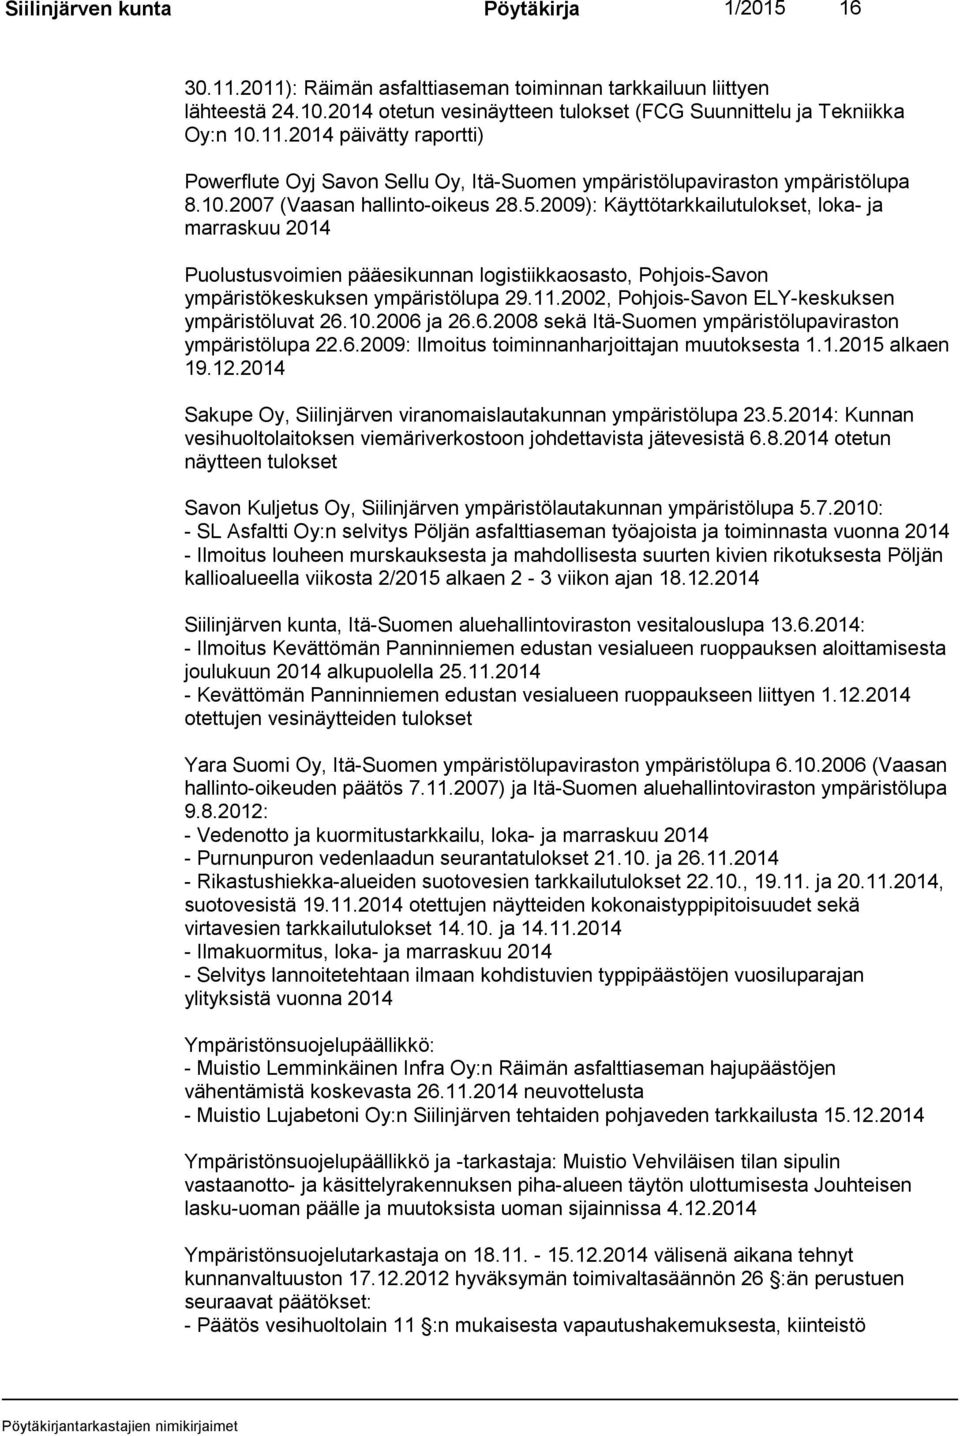 2002, Pohjois-Savon ELY-keskuksen ympäristöluvat 26.10.2006 ja 26.6.2008 sekä Itä-Suomen ympäristölupaviraston ympäristölupa 22.6.2009: Ilmoitus toiminnanharjoittajan muutoksesta 1.1.2015 alkaen 19.